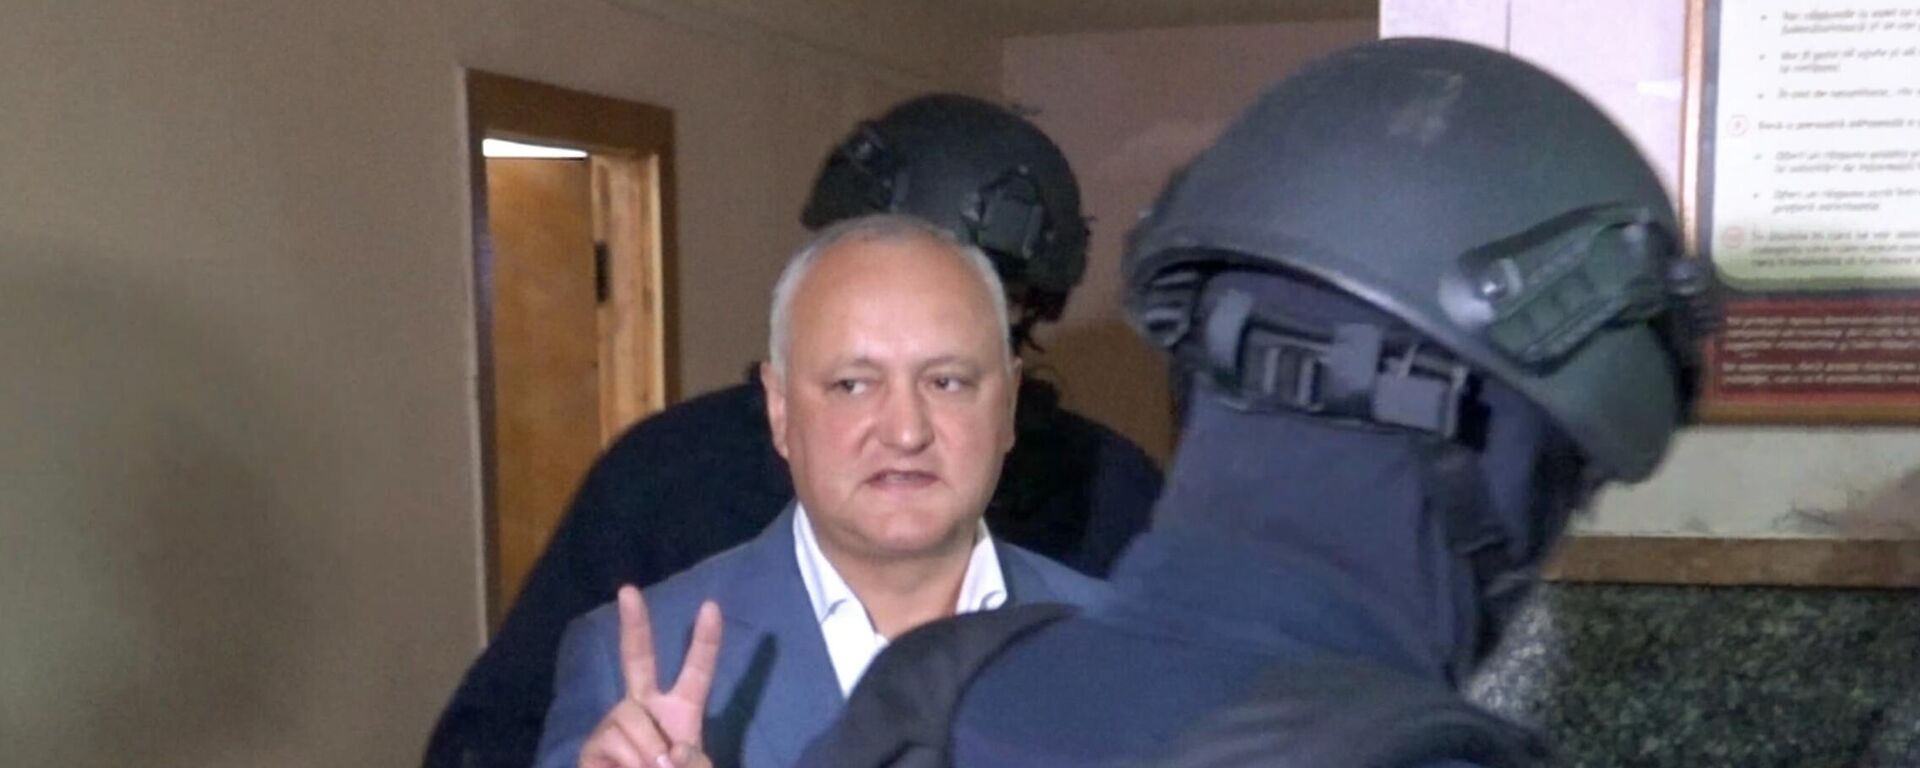 Un tribunal de Chisinau pone bajo arresto domiciliario al expresidente de Moldavia Igor Dodon (2016-2020), que se enfrenta a cargos de corrupción y traición a la patria - Sputnik Mundo, 1920, 26.05.2022